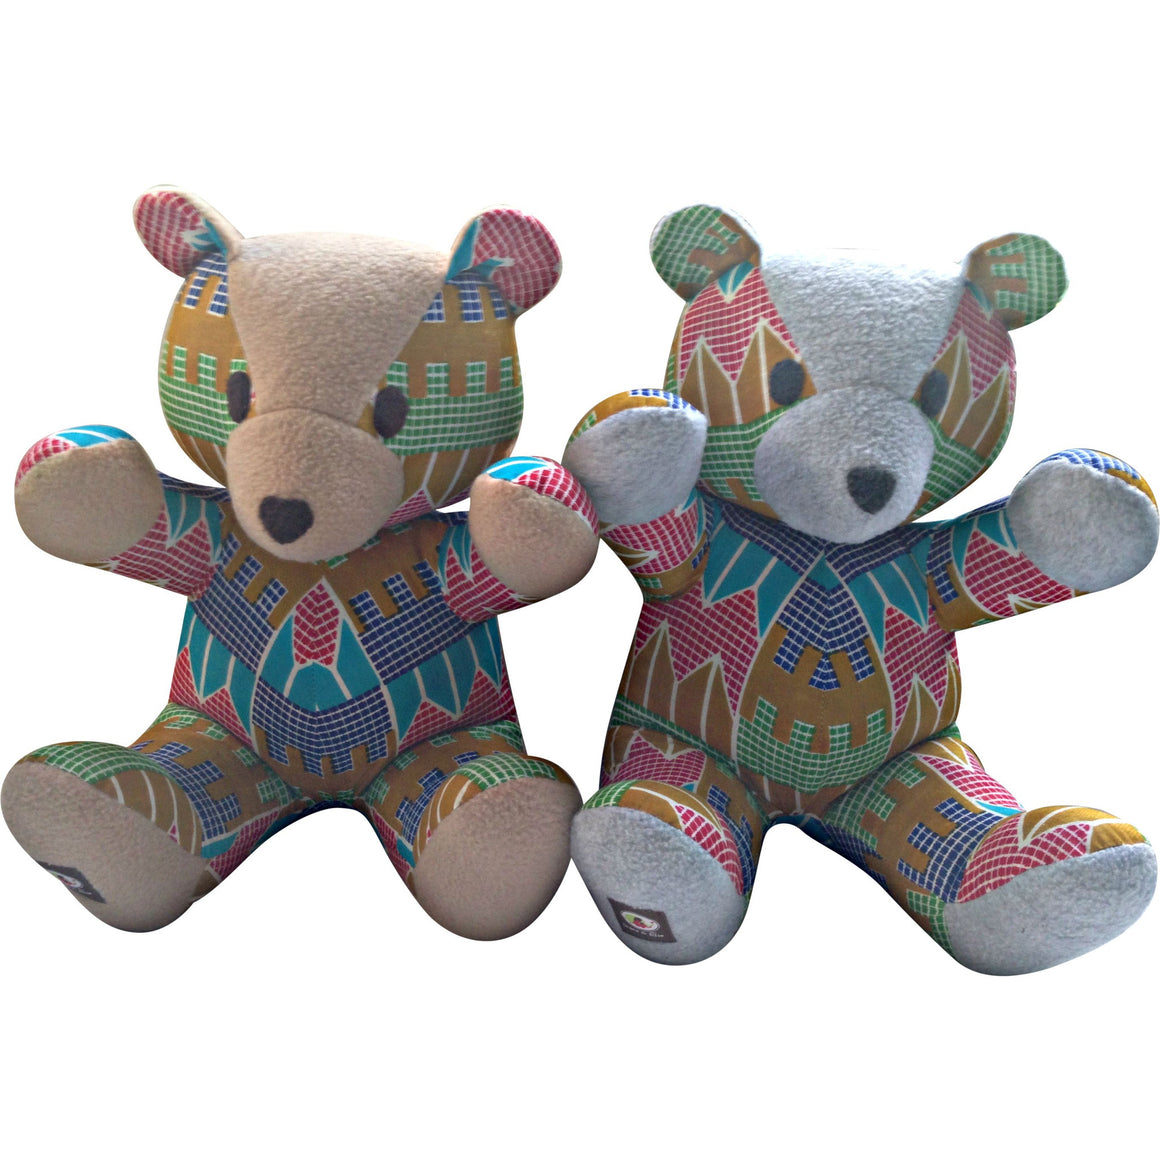 Toys - Nana Tan The Teddy Bear